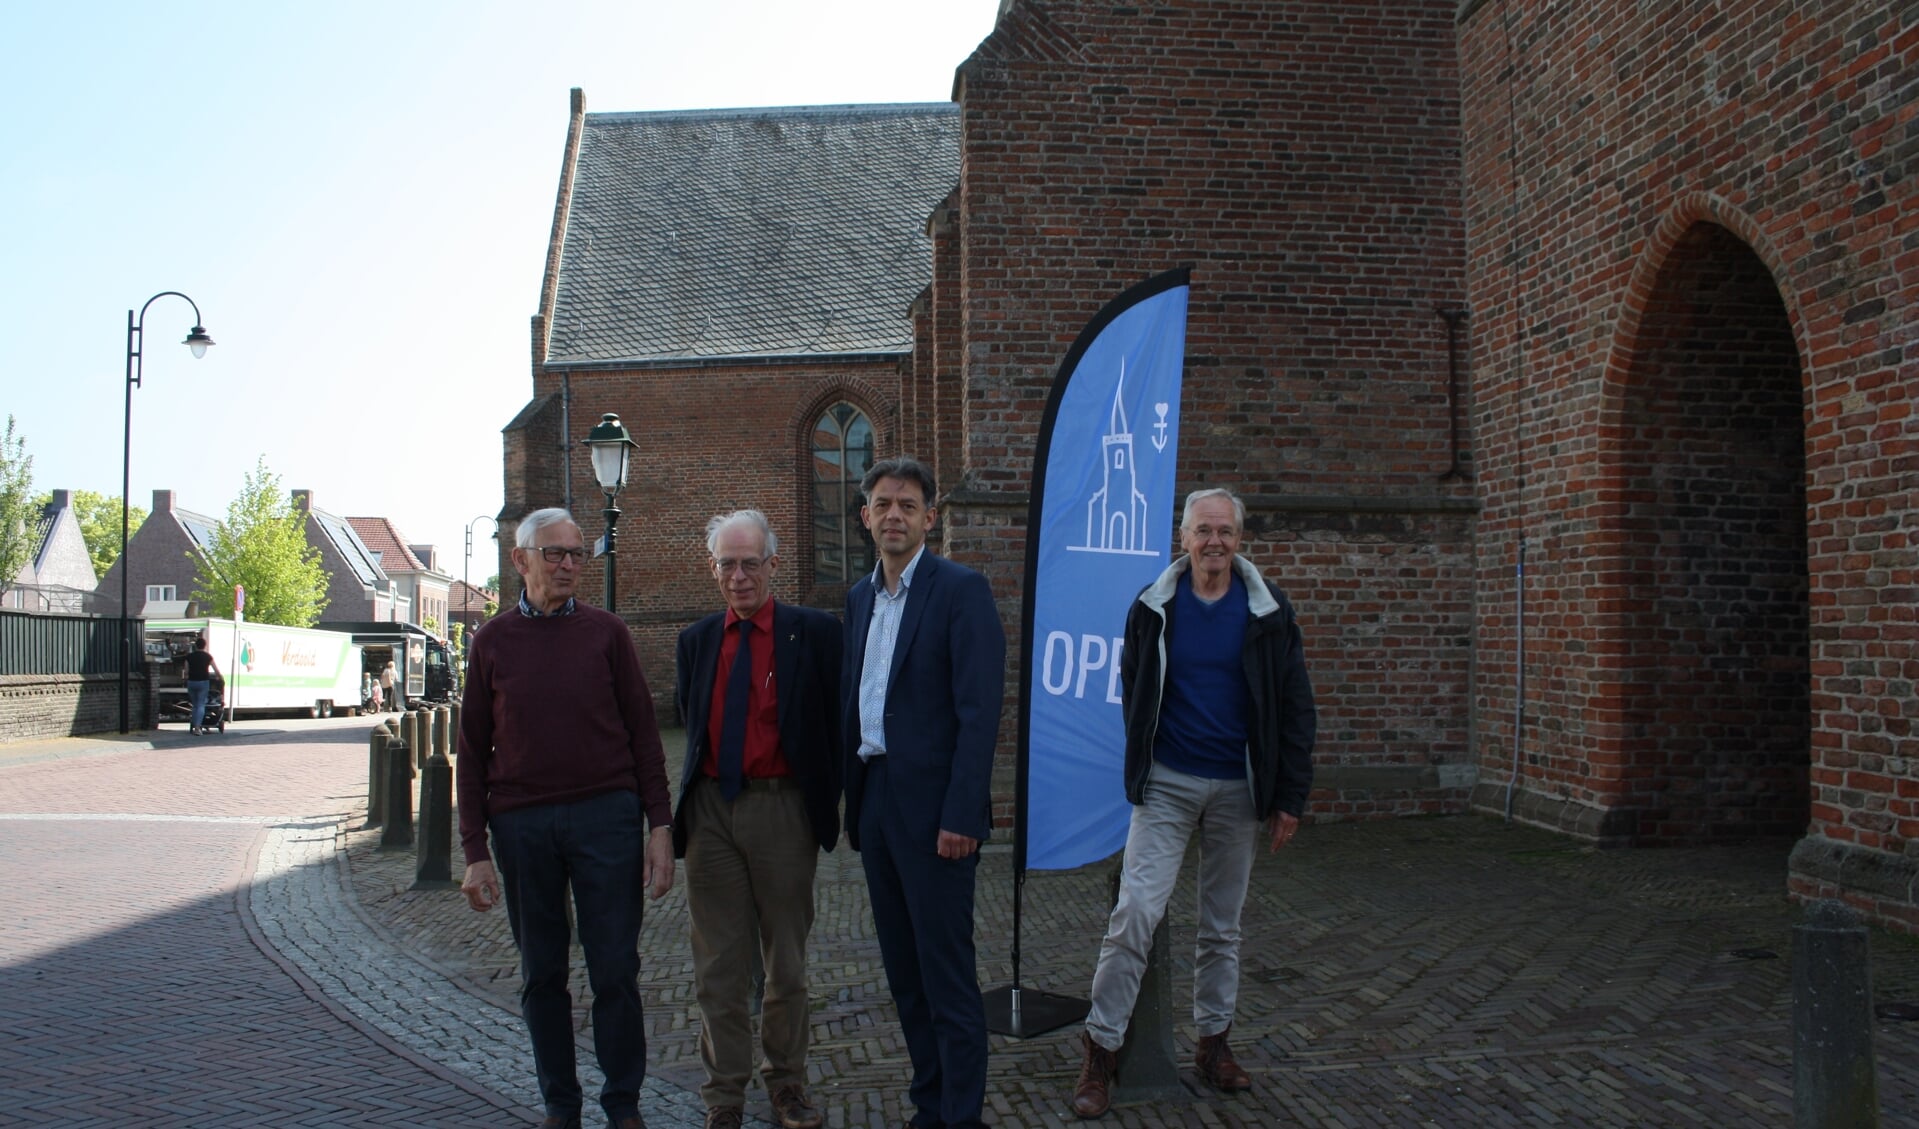 • Vlnr: Jan Stravers, dr. John van Eck, ds. Piet Vroegindeweij en ouderling Kees Vis.

